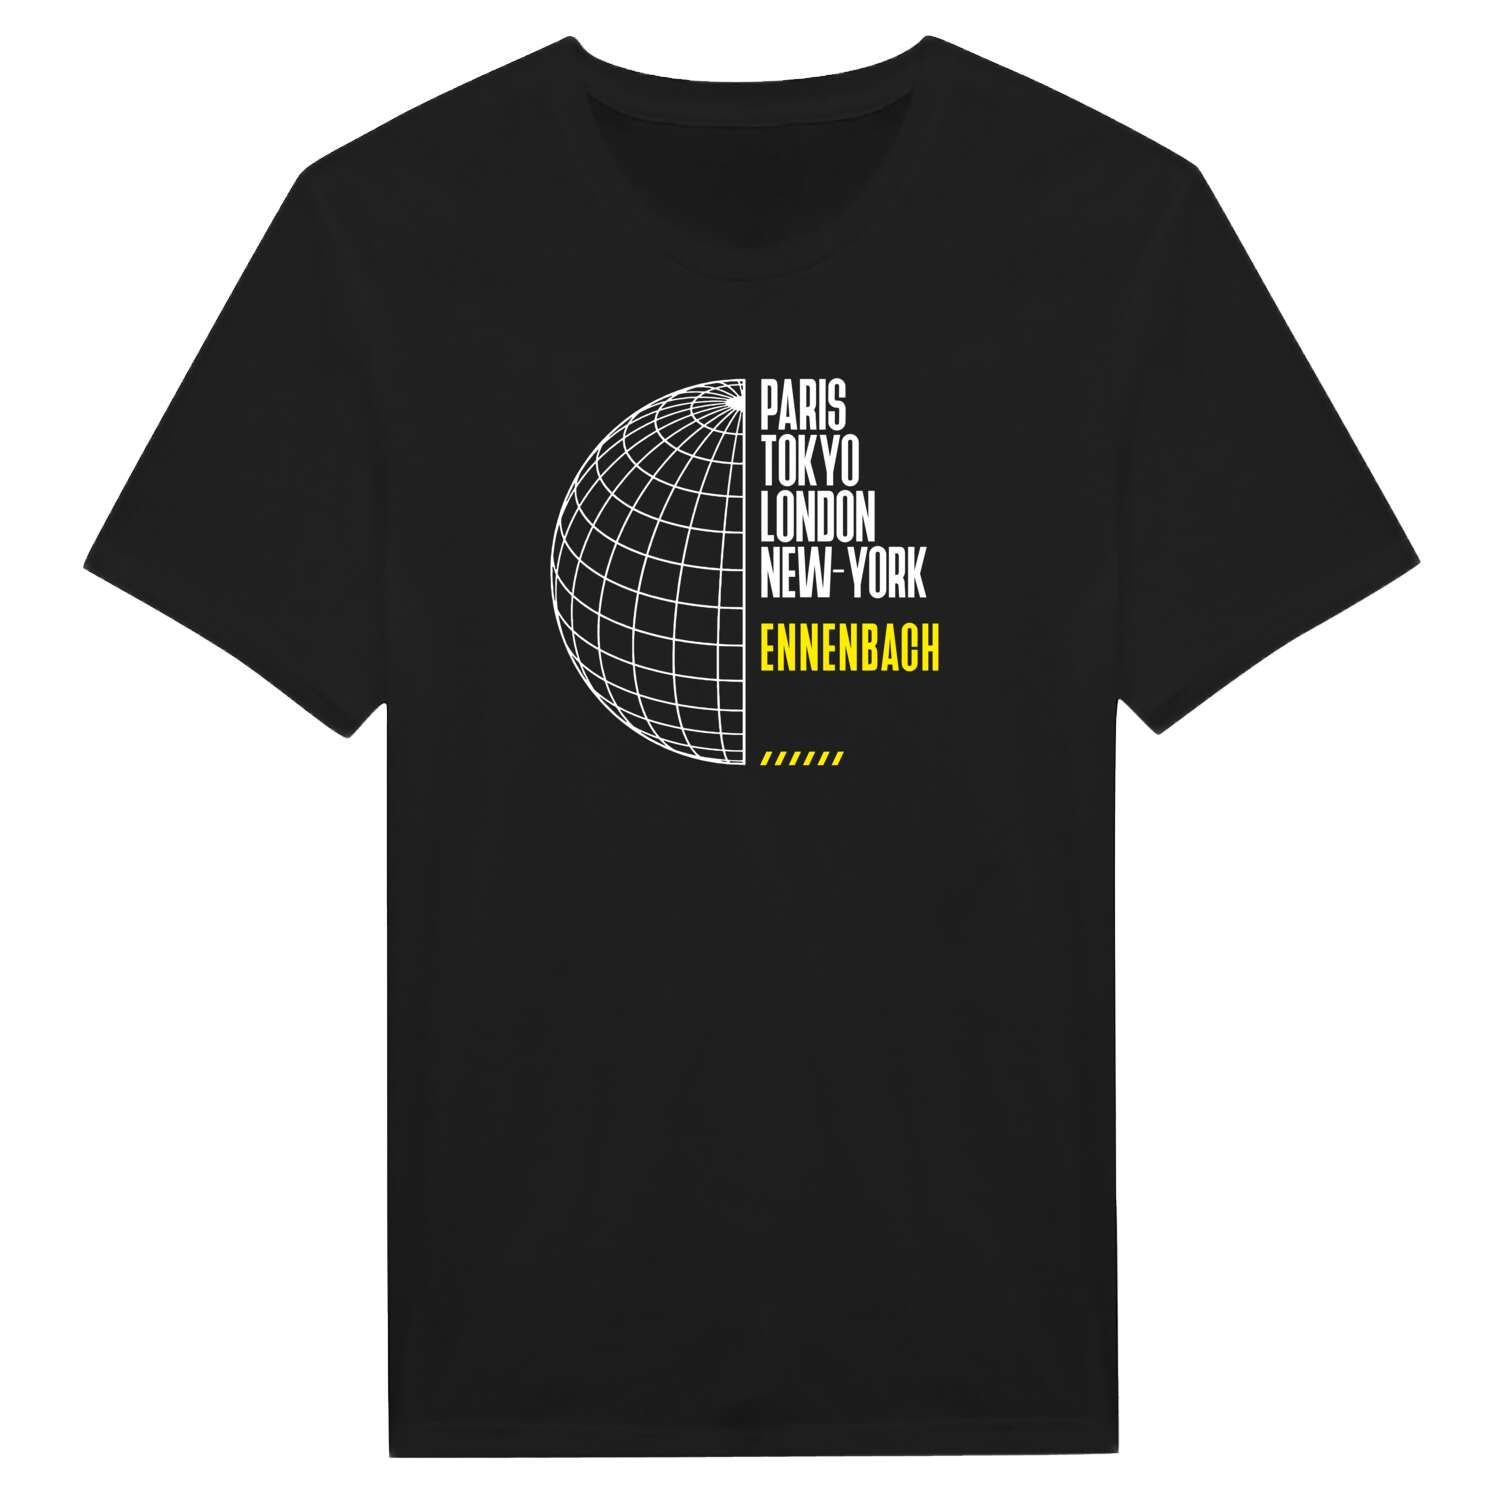 Ennenbach T-Shirt »Paris Tokyo London«